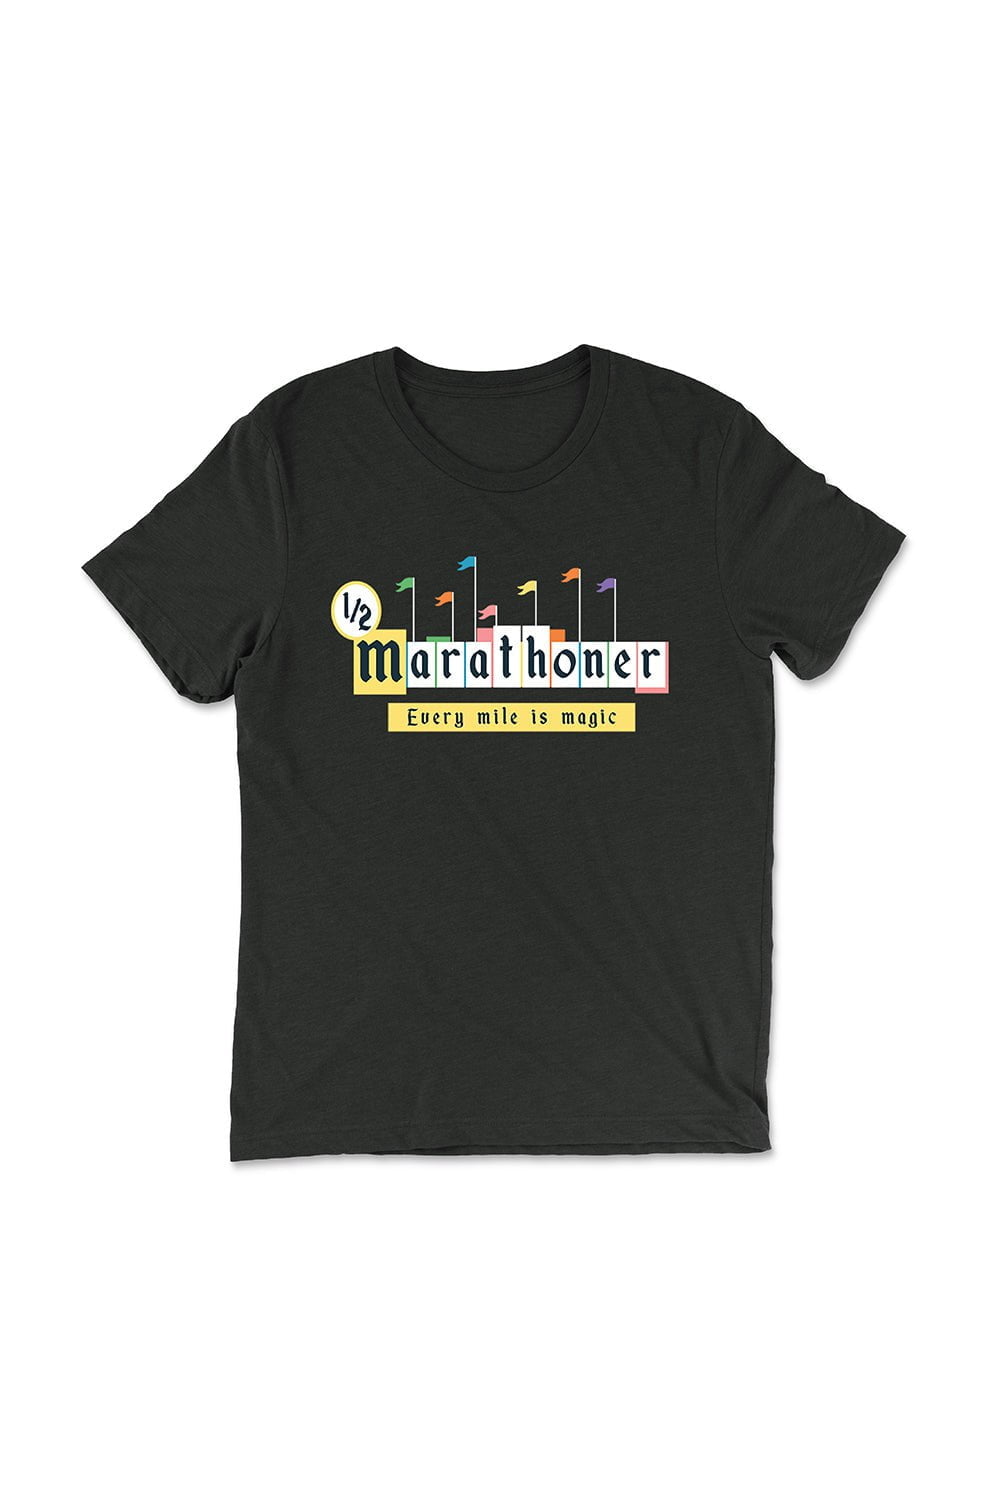 Sarah Marie Design Studio Unisex Tee Disney Half Marathoner T-Shirt